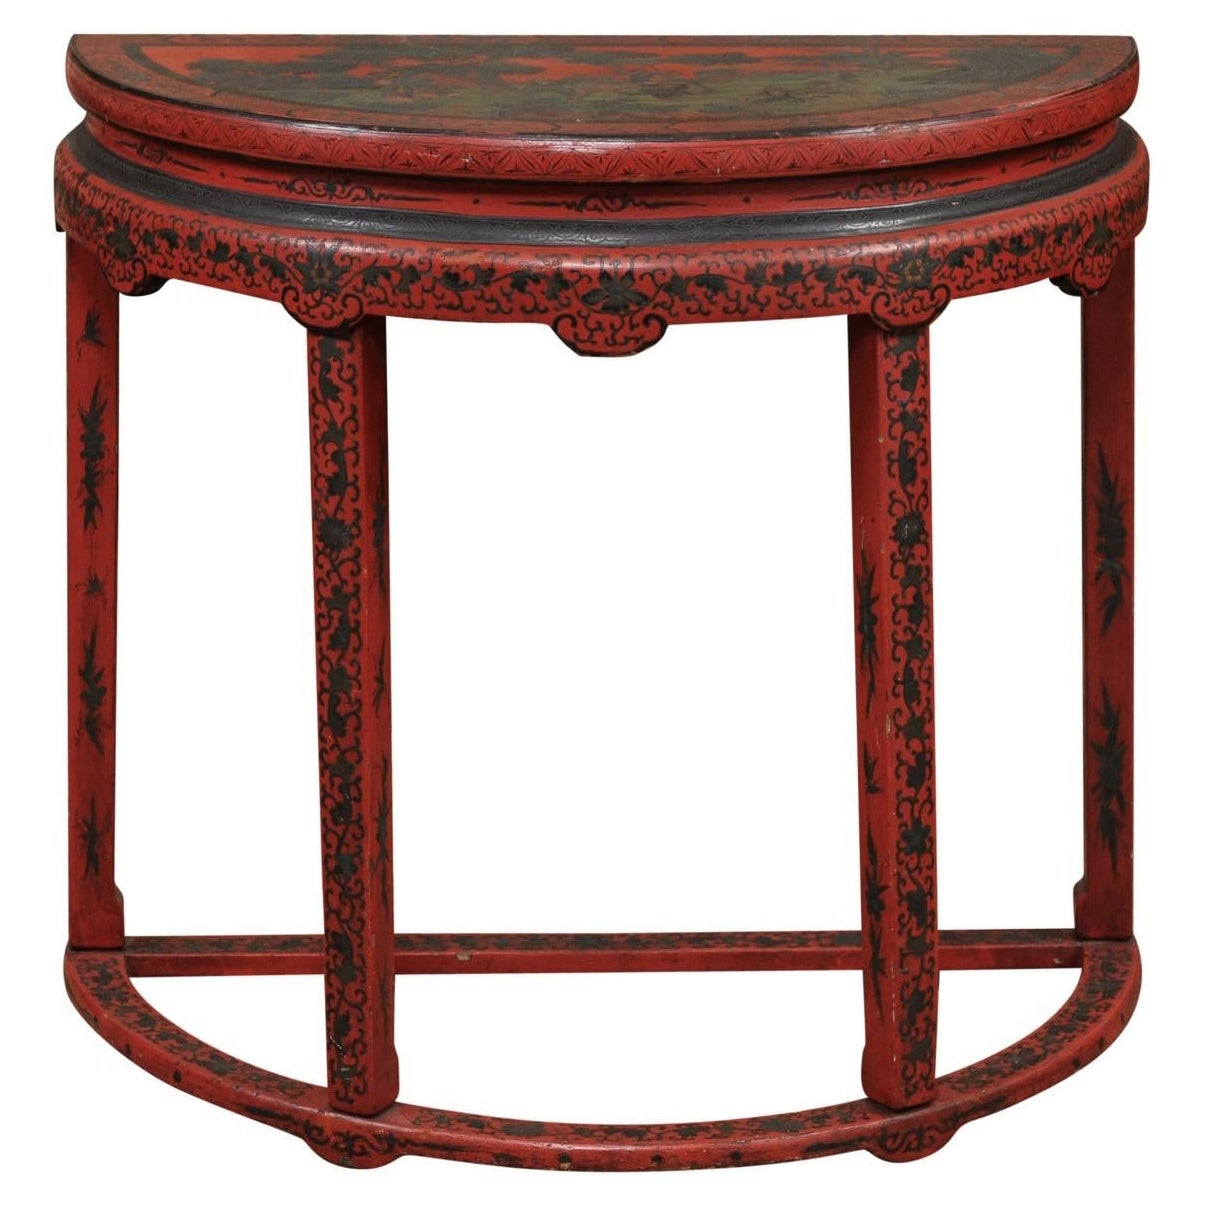 Roter Chinoiserie-Demilune-Konsolentisch, China, 19. Jahrhundert